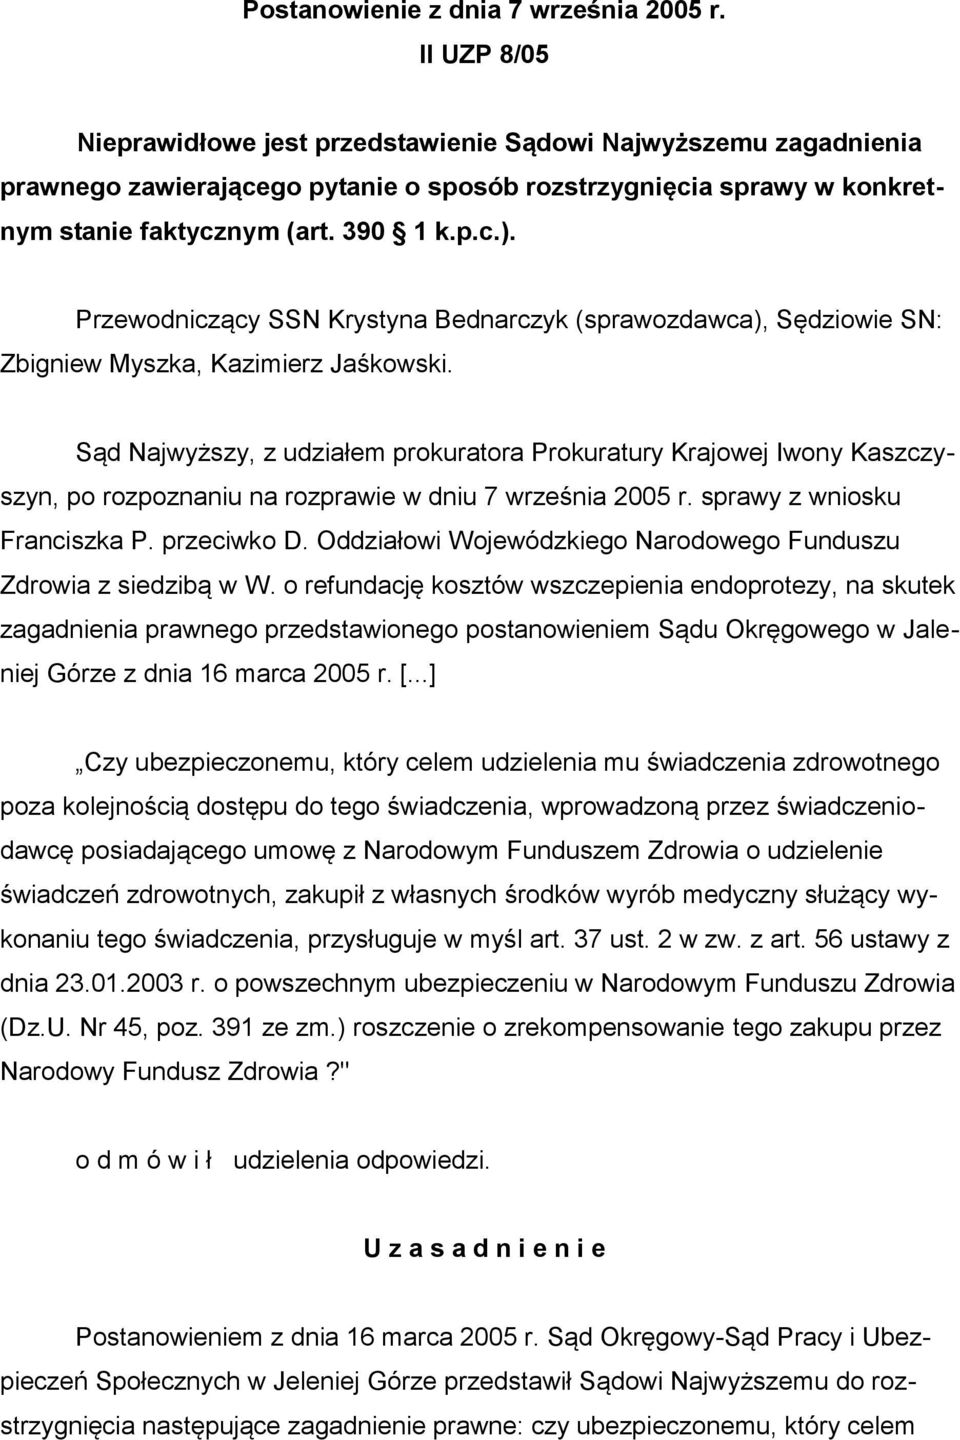 Przewodniczący SSN Krystyna Bednarczyk (sprawozdawca), Sędziowie SN: Zbigniew Myszka, Kazimierz Jaśkowski.